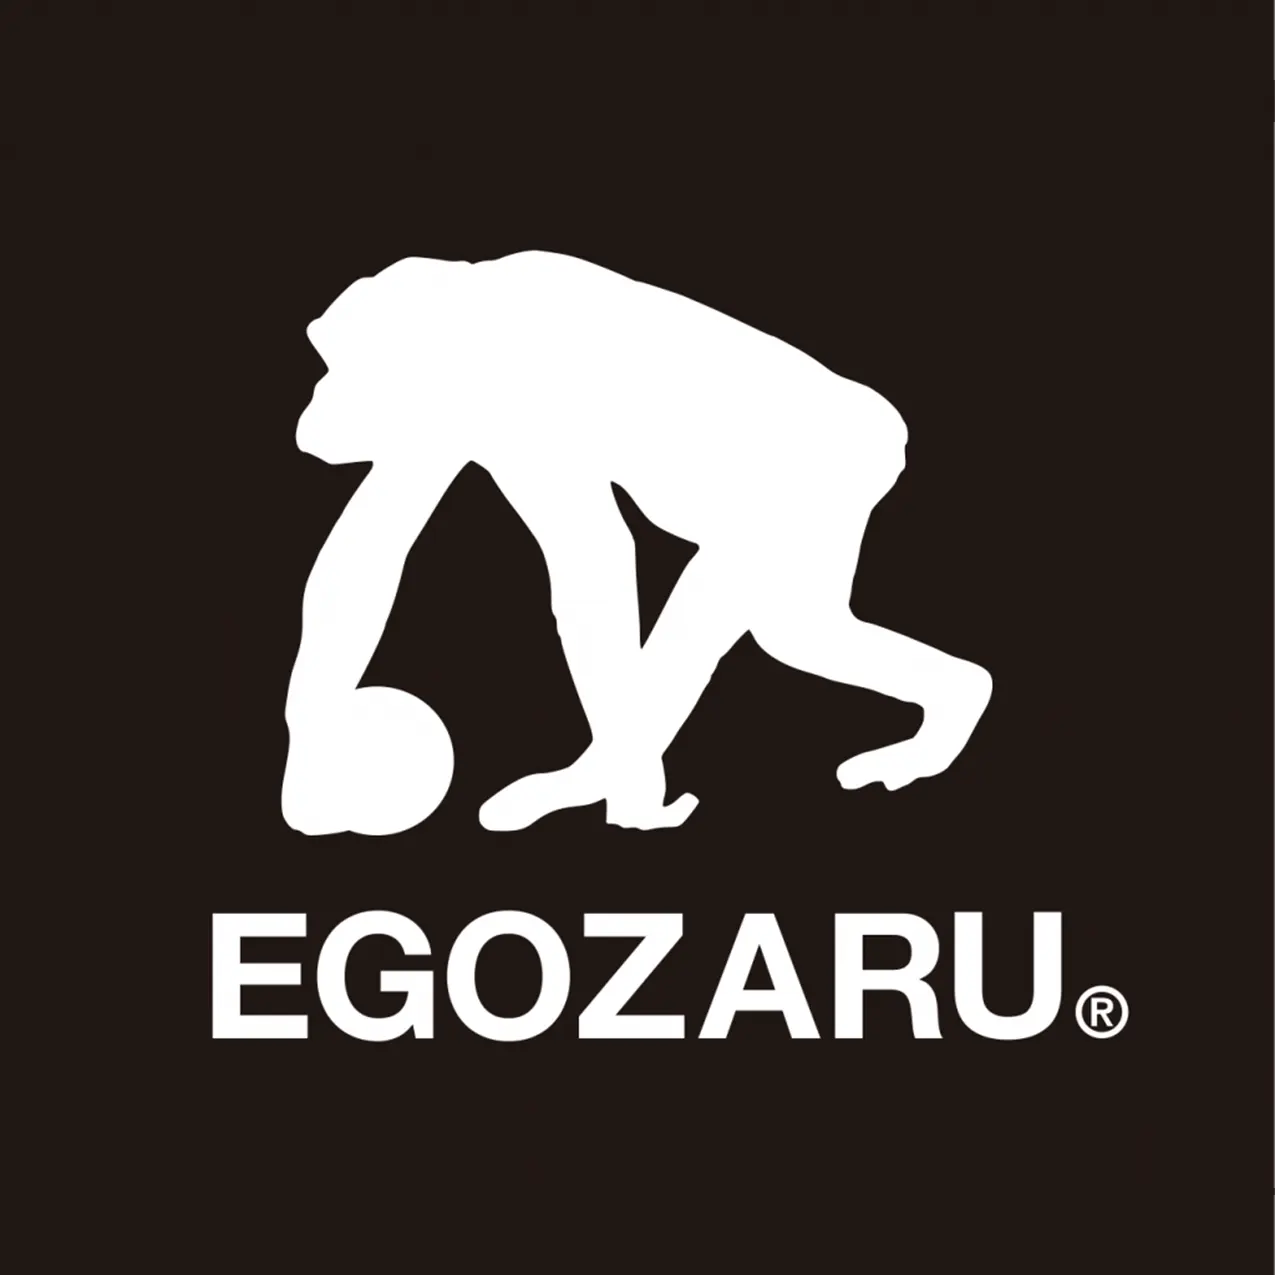 圧倒的高品質を実現したウエアを展開する、日本発の“プレミアム”バスケットボールブランド「EGOZARU(エゴザル)」